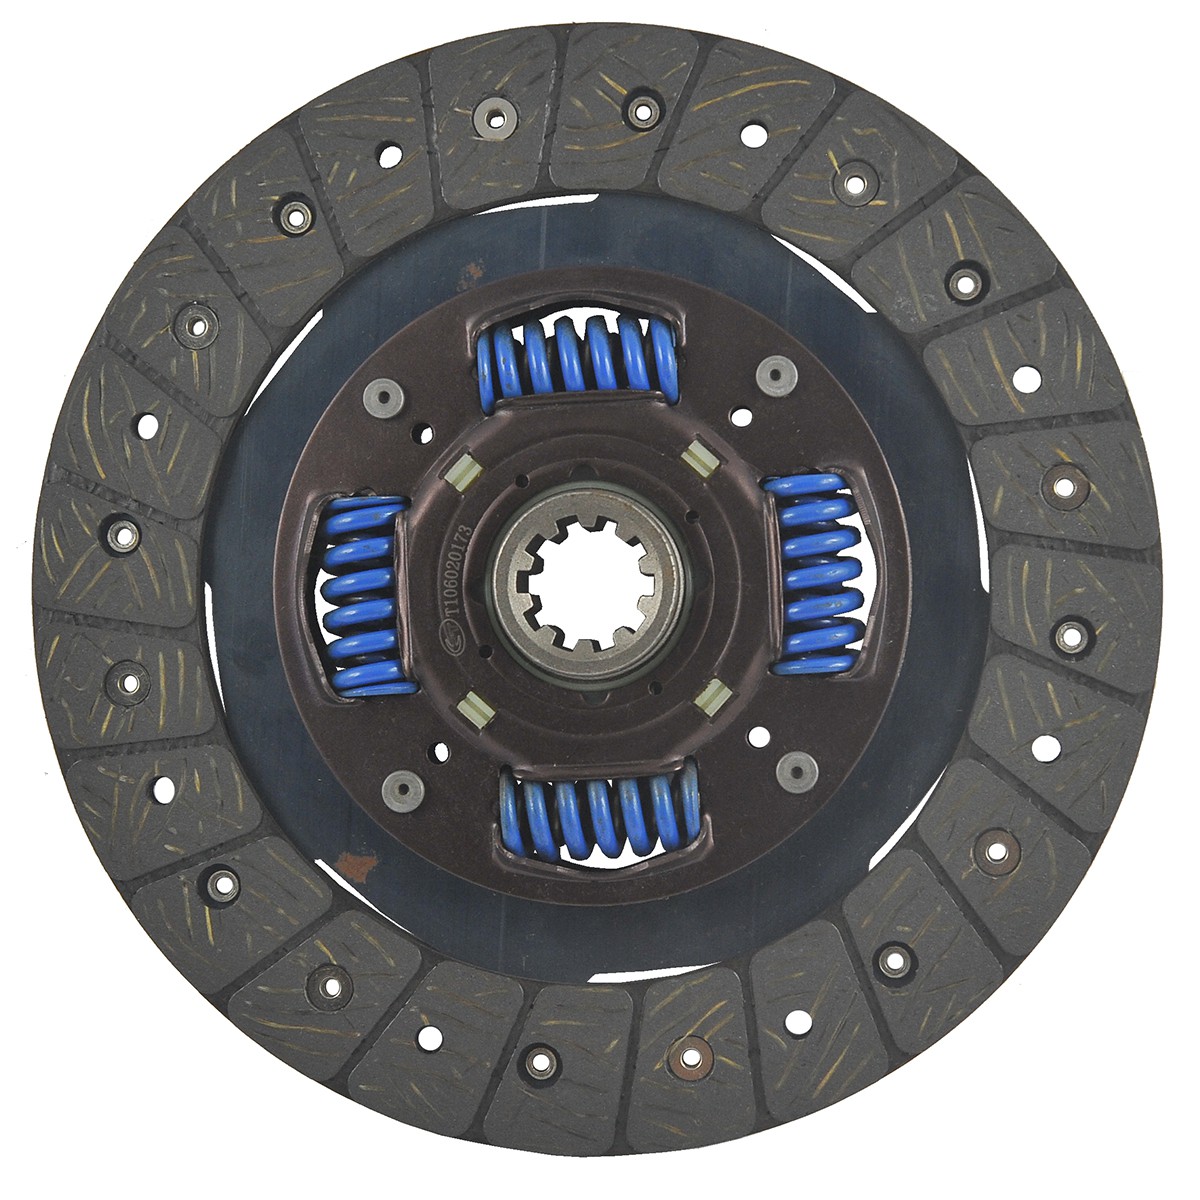 Clutch disc / 215 mm / 8-1/2" / 10 T / Kubota L2501/L2800/L3200DT/L3408 / T1060-20173 / 6-05-100-02